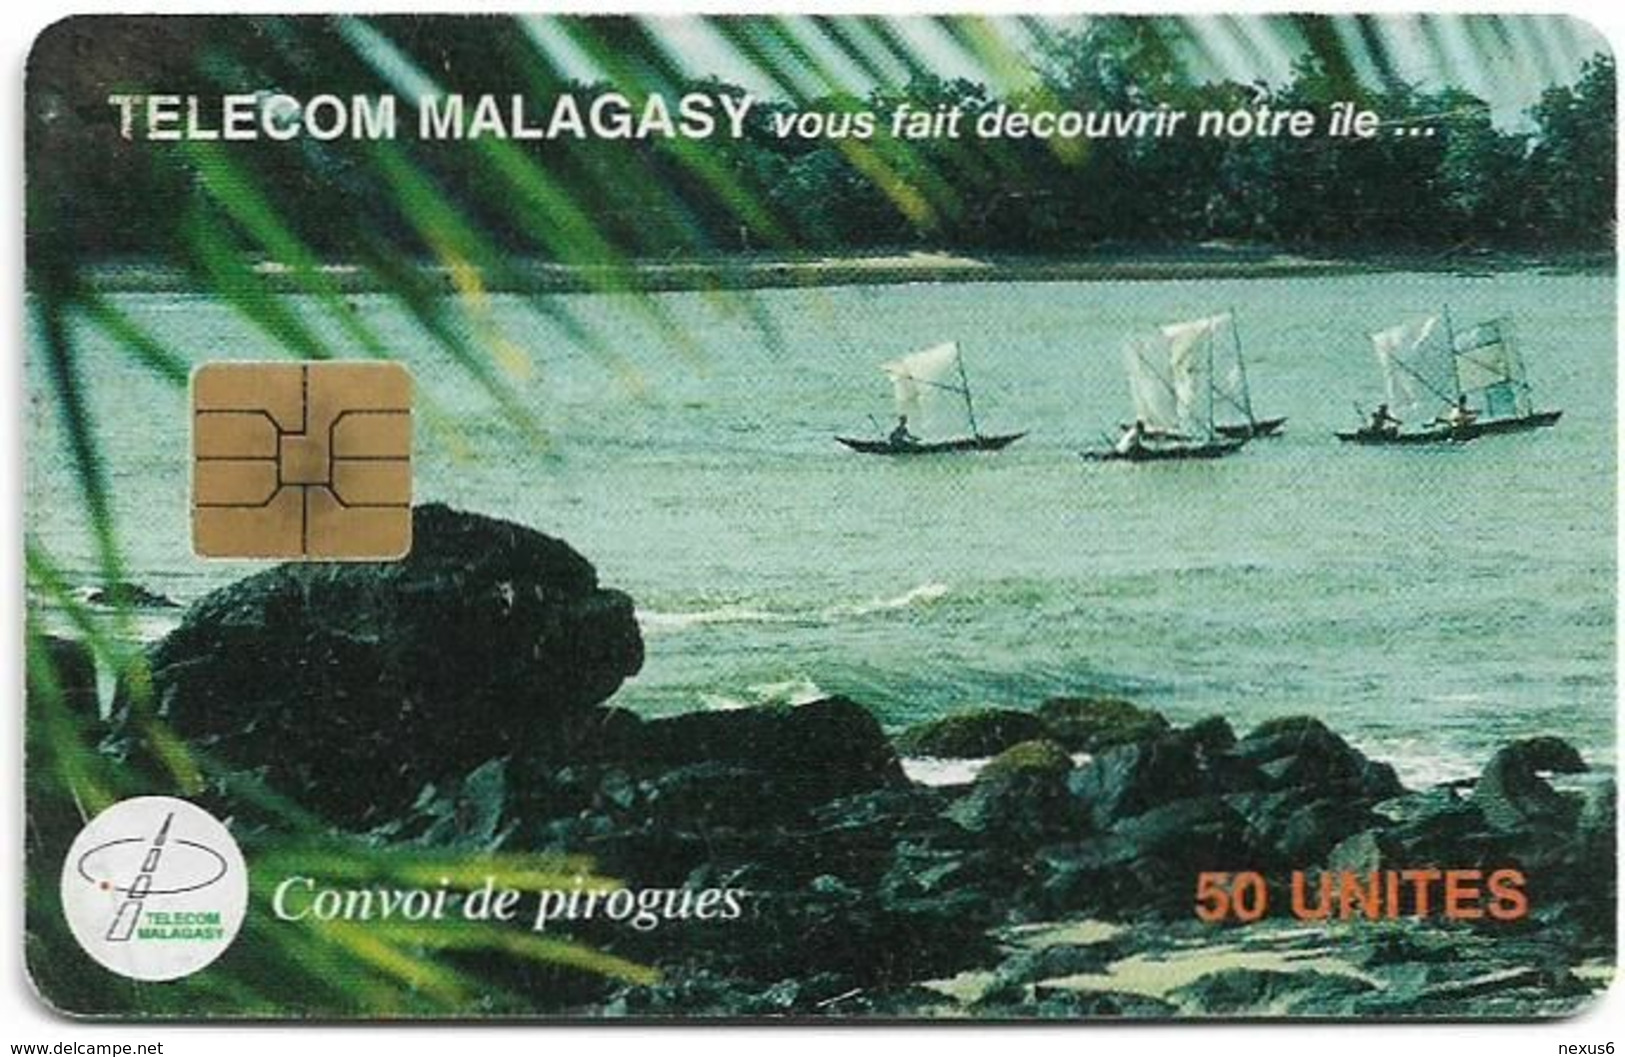 Madagascar - Telecom Malagasy - Convoy De Pirogues - 50Units, Chip Solaic, 250.000ex, Used - Madagascar